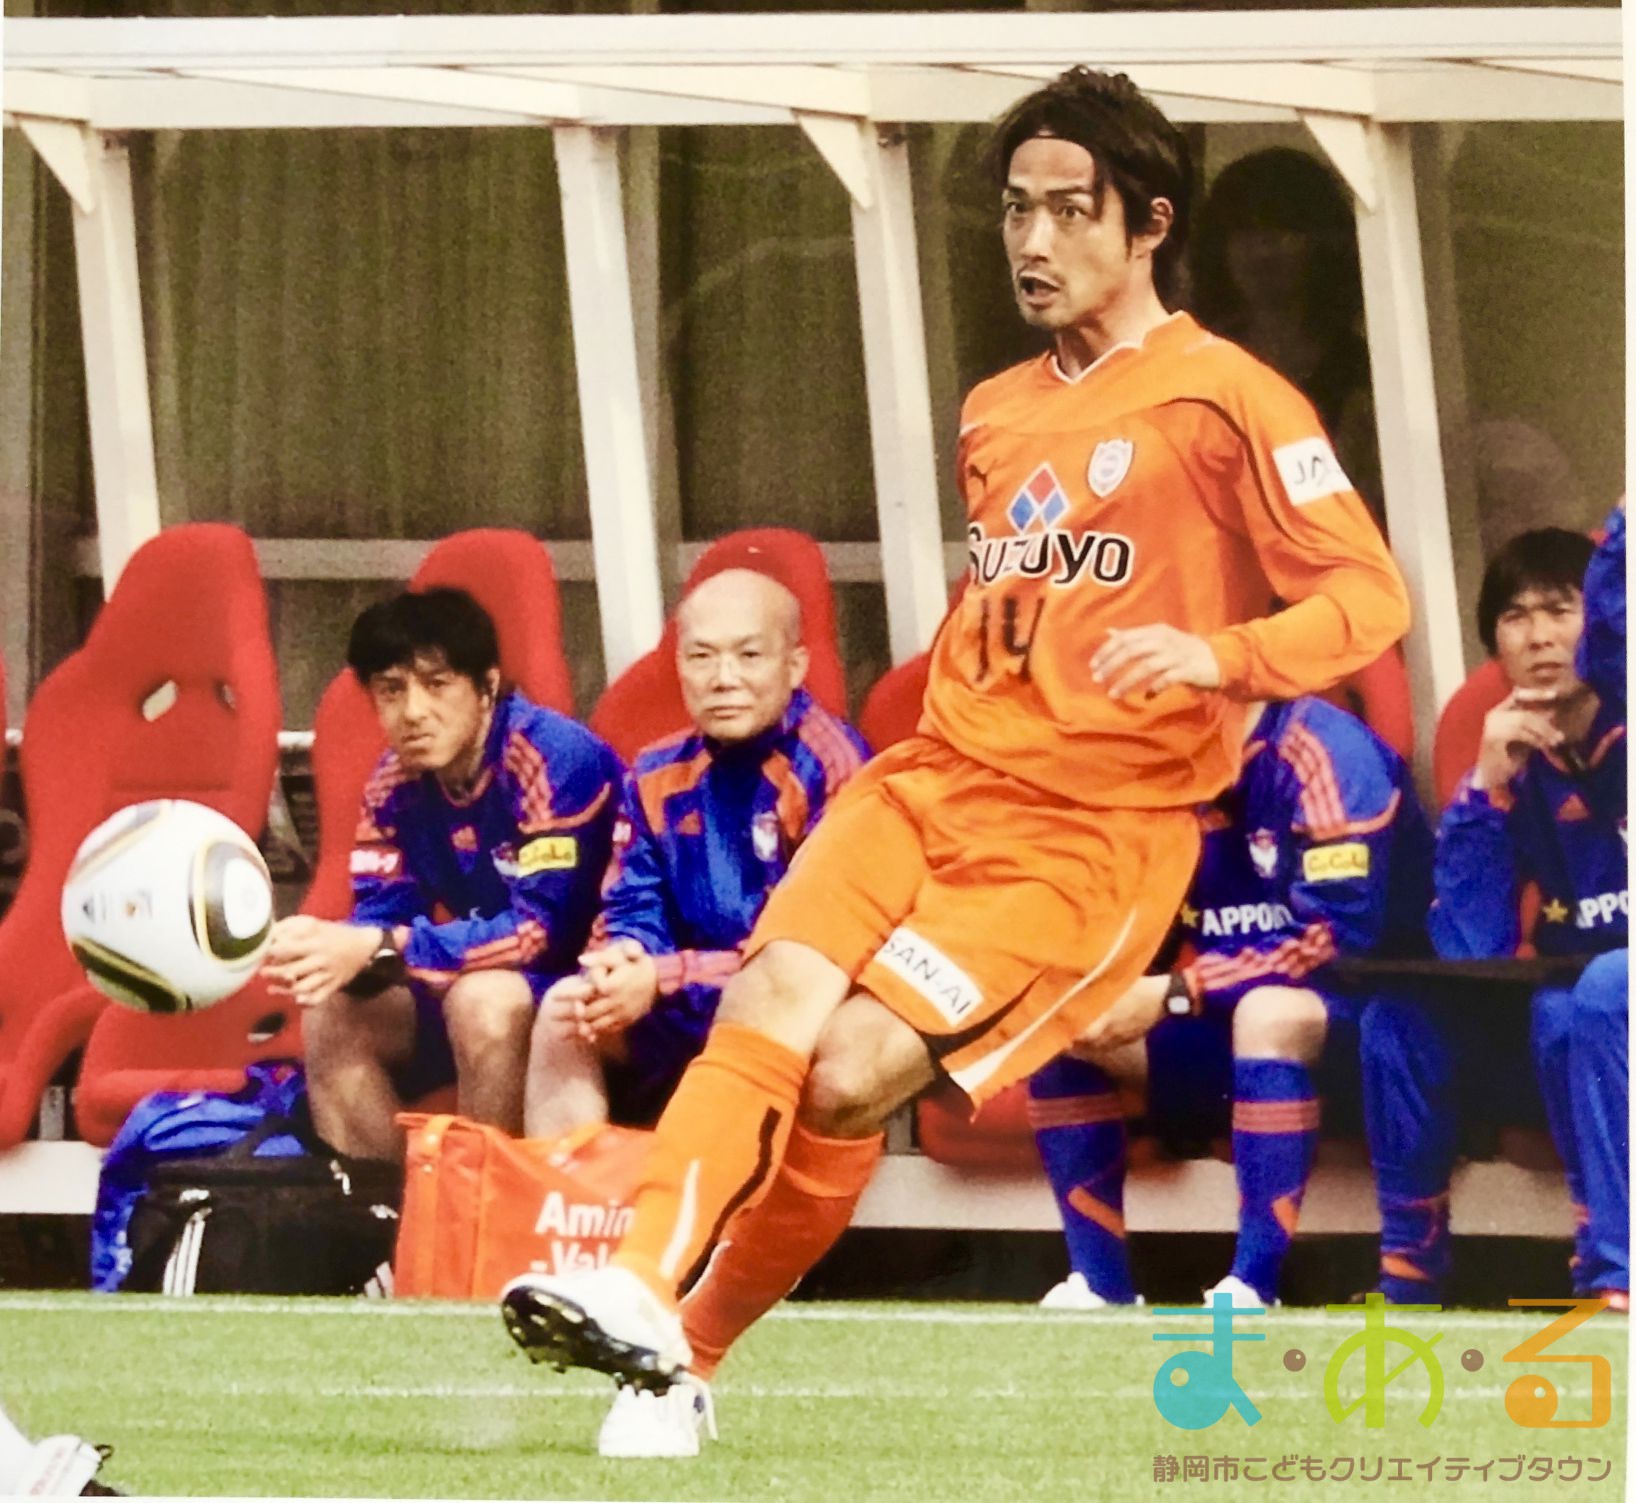 締切間近 清水エスパルスob選手に学ぶ プロサッカー選手のおしごと とは 静岡市こどもクリエイティブタウンま あ る 公式ホームページ